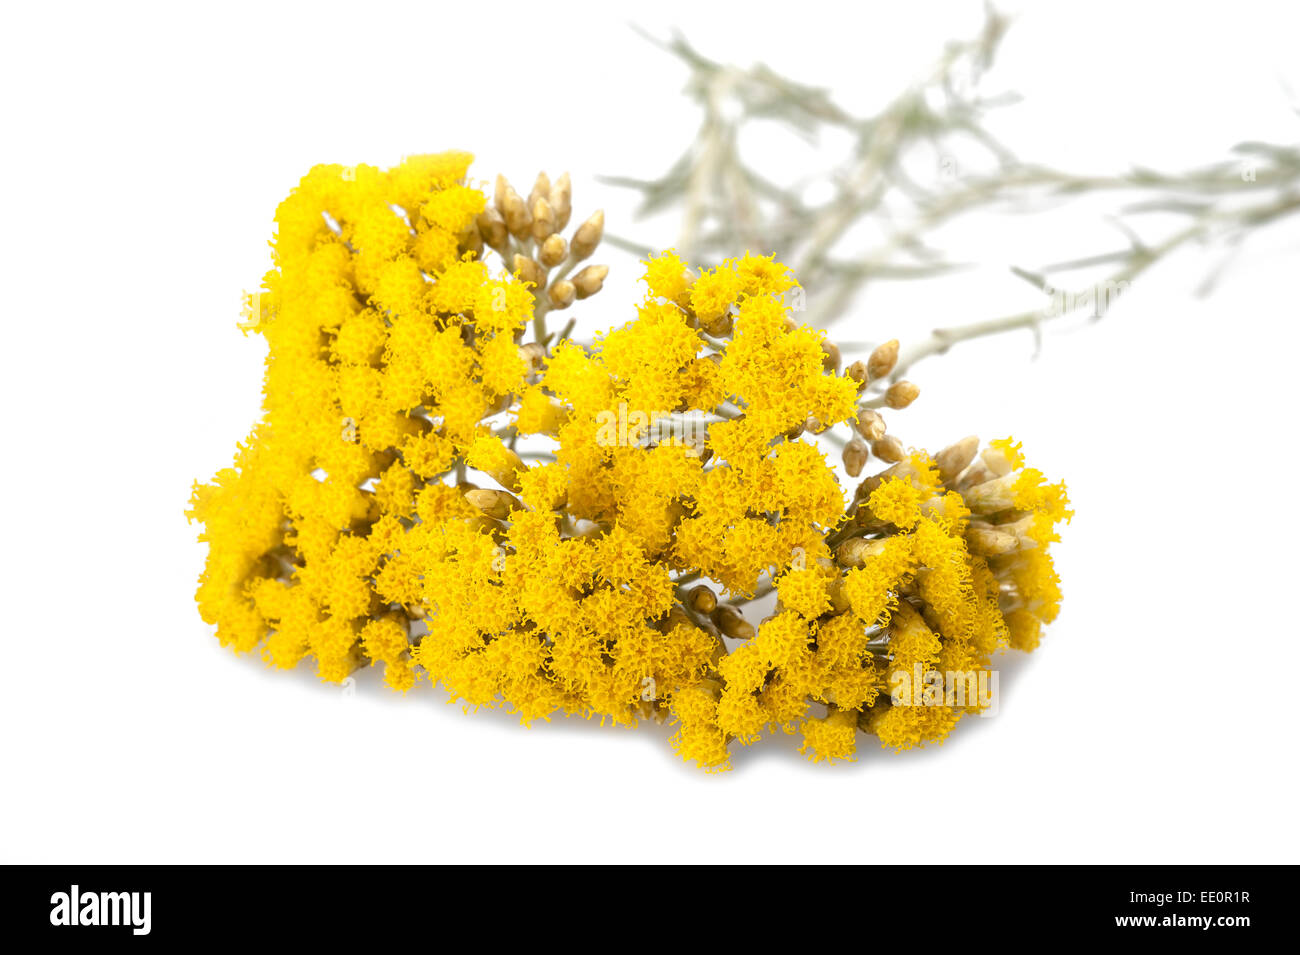 Immortelle (Helychrysum) isolated on white background Stock Photo